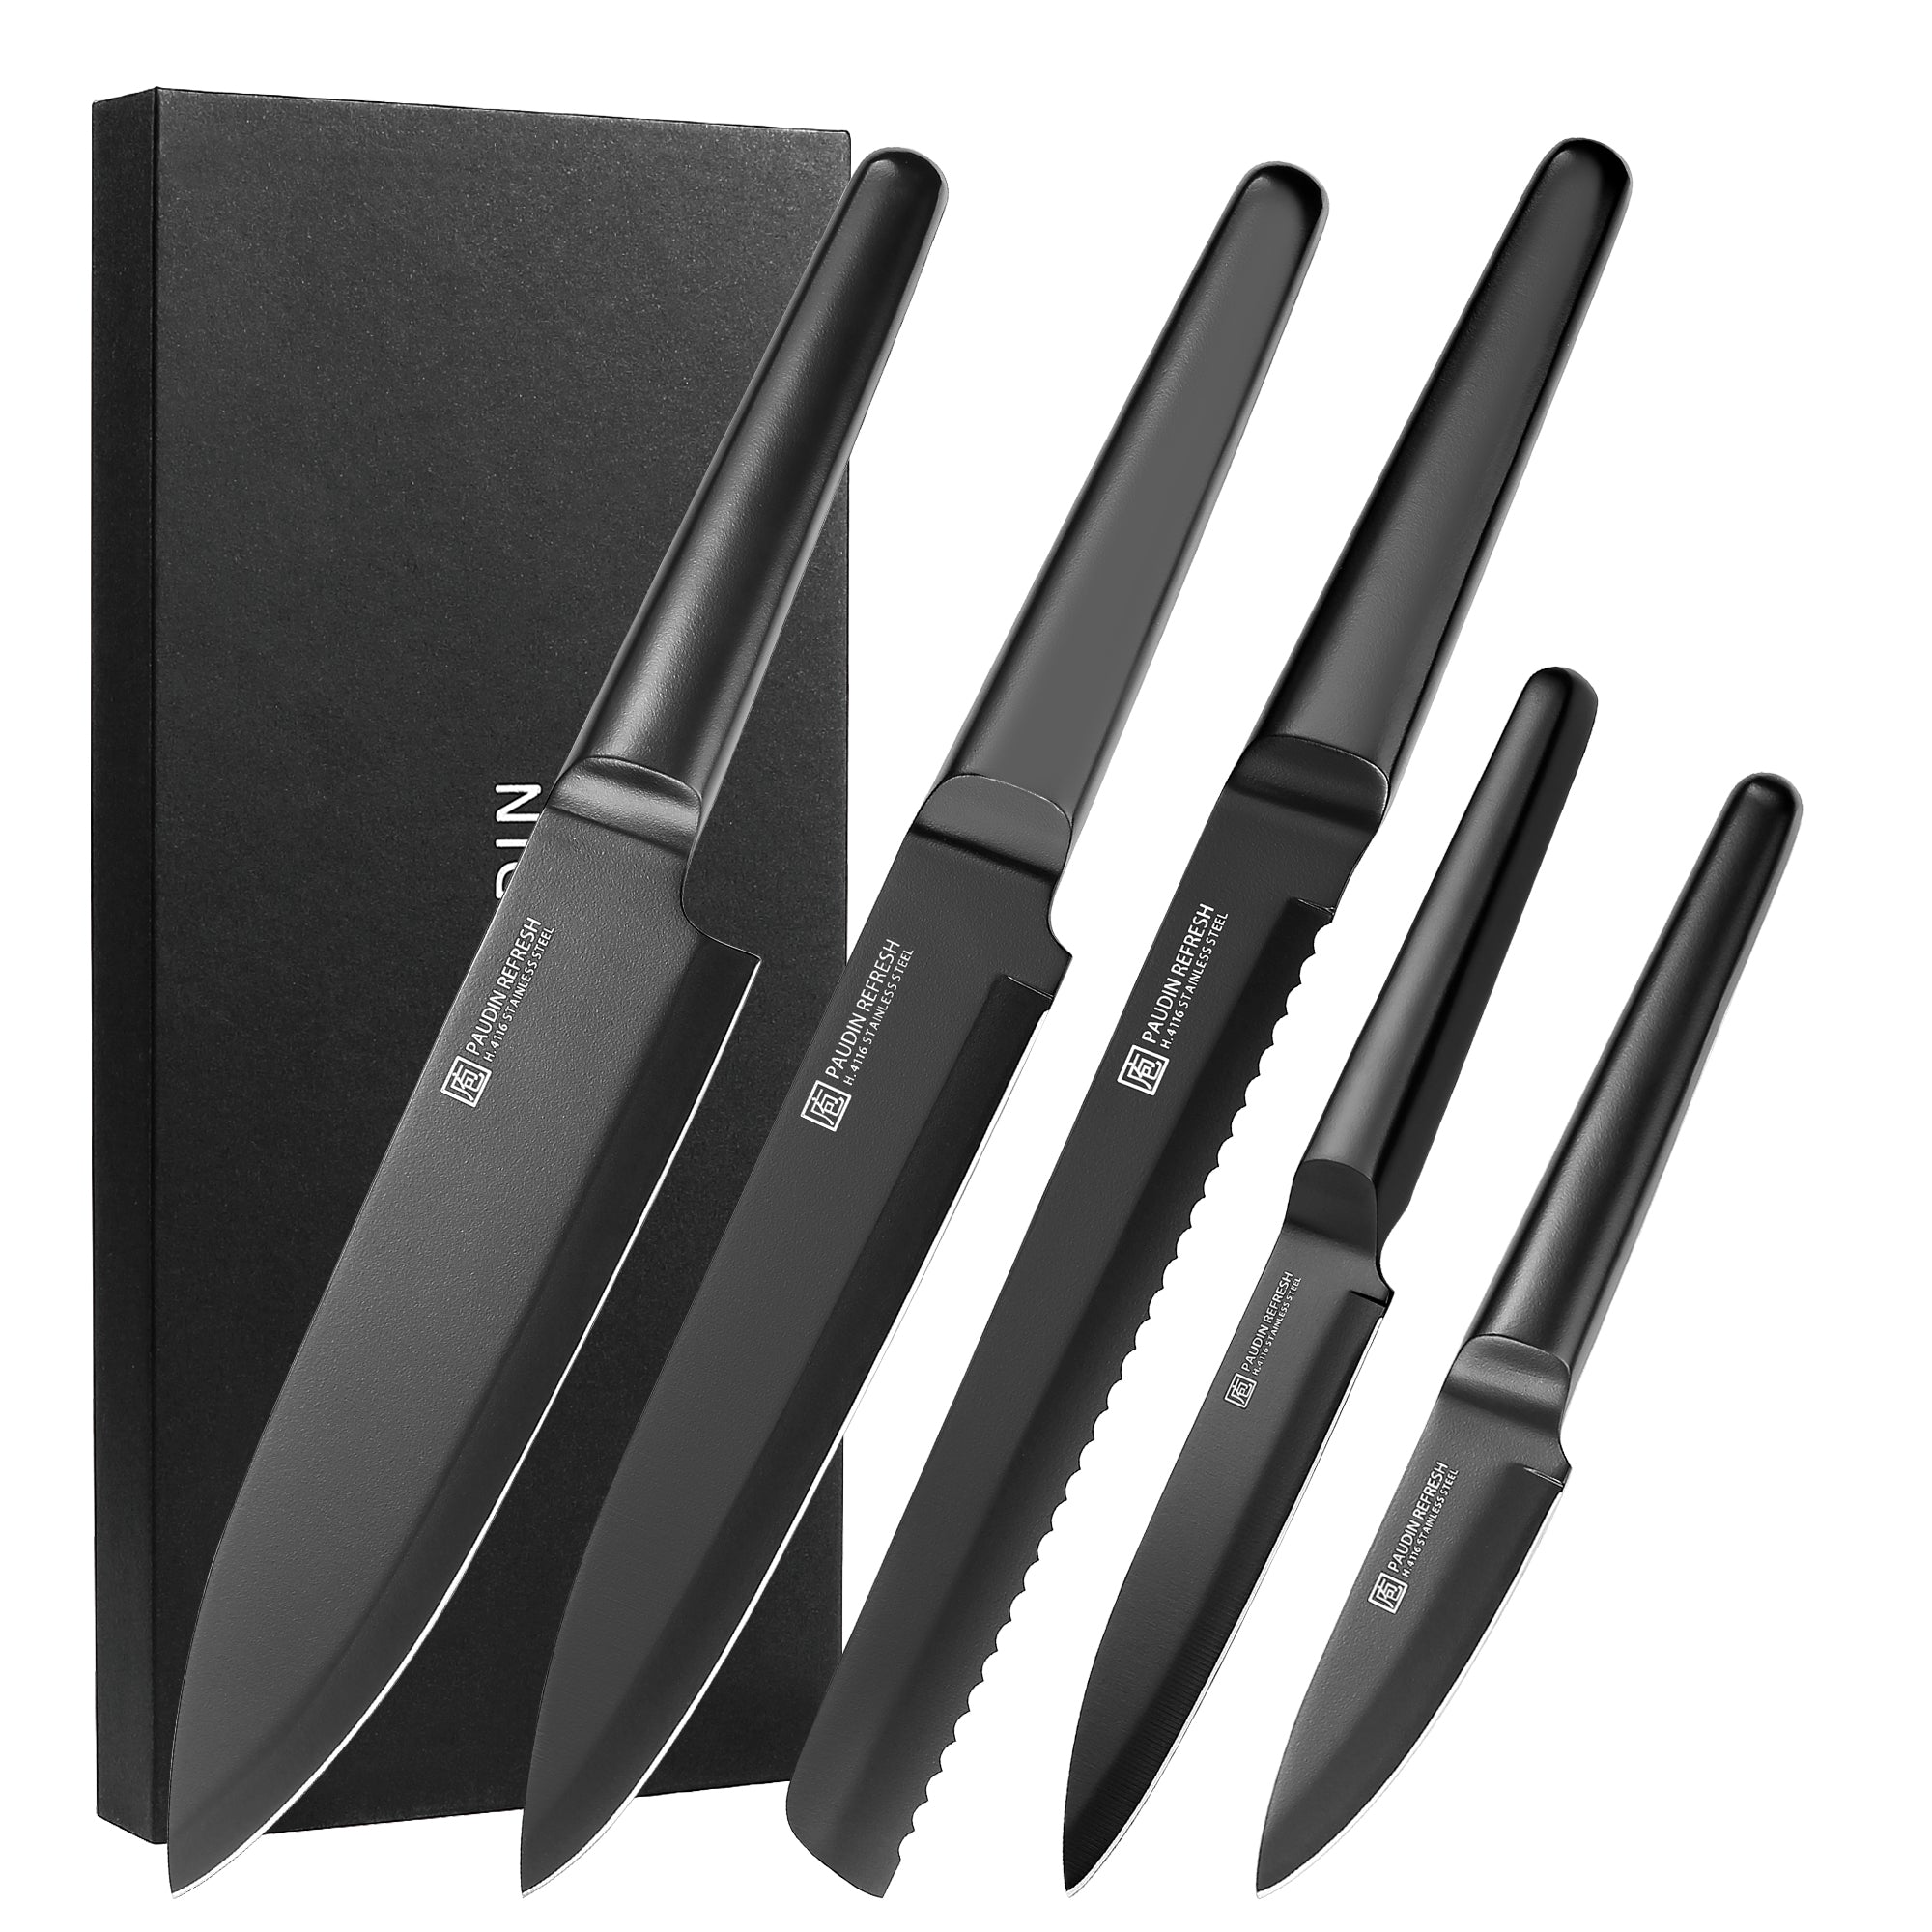 Paudin NS2 3 Pcs Chef Knives Set – Paudin Store